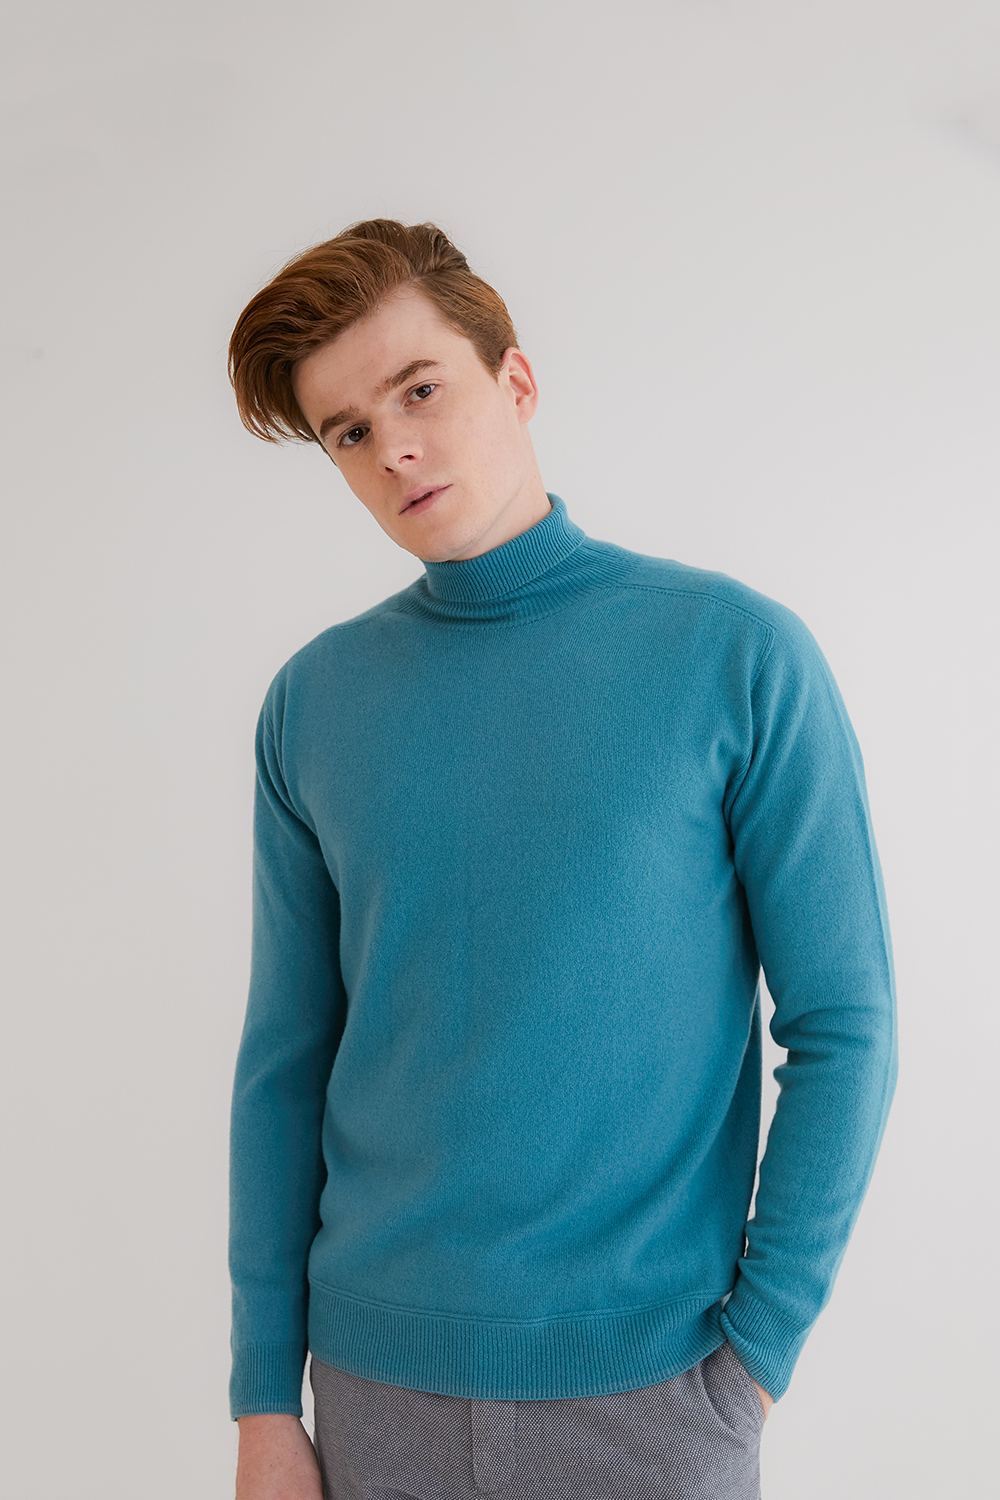 프리미엄 캐시미어100 남성 스웨터 [Pure cashmere100 turtleneck sweater by whole-garment knitting - Turquoise blue]